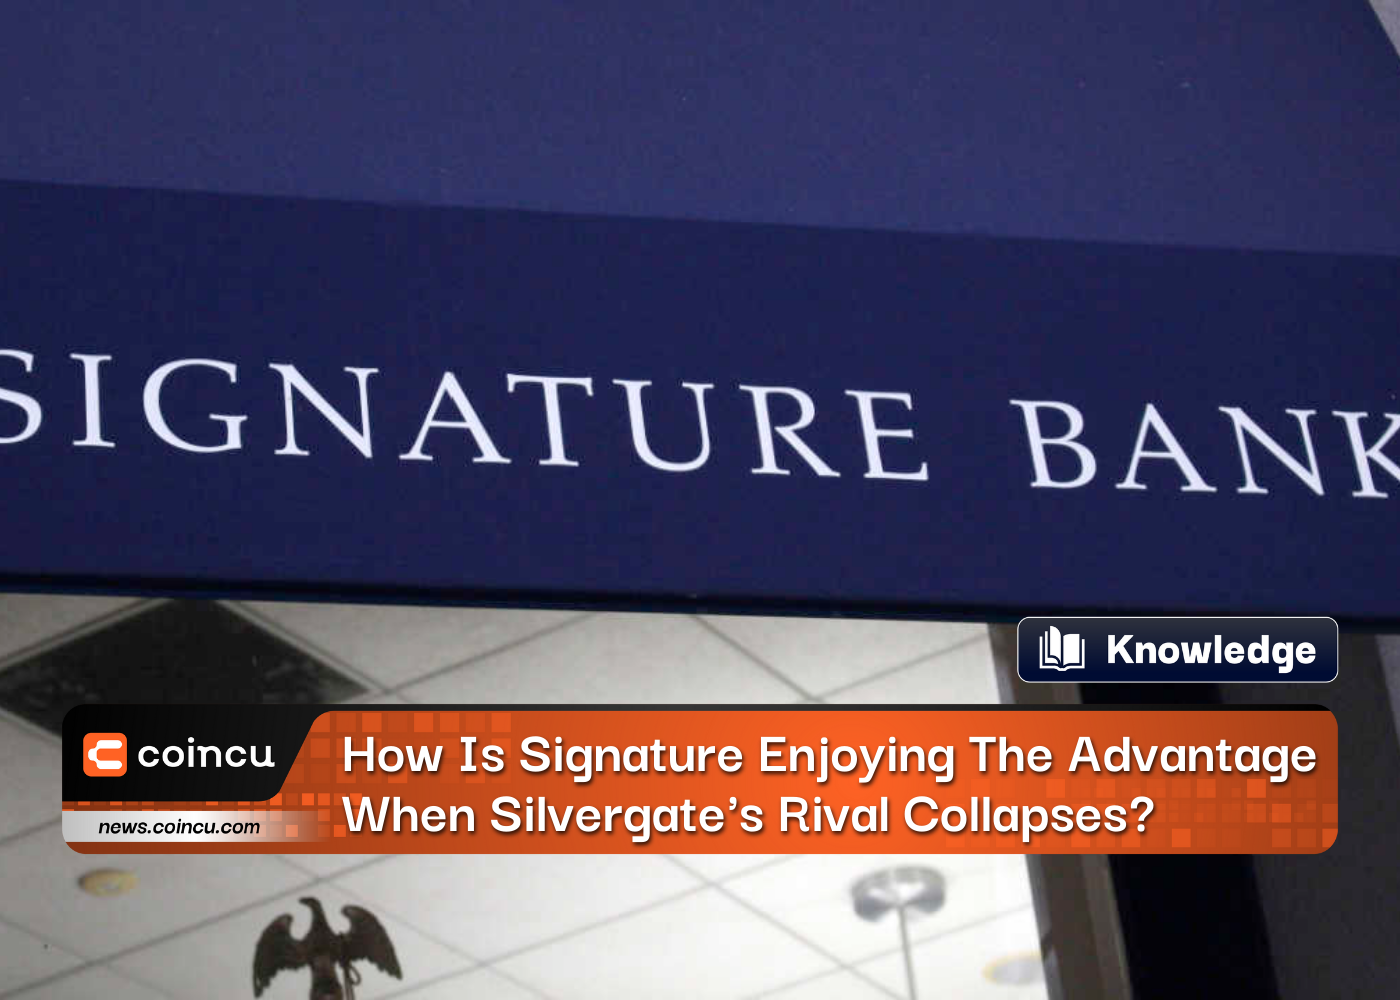 Comment Signature Bank profite-t-elle de l’avantage lorsque le rival de Silvergate s’effondre ?